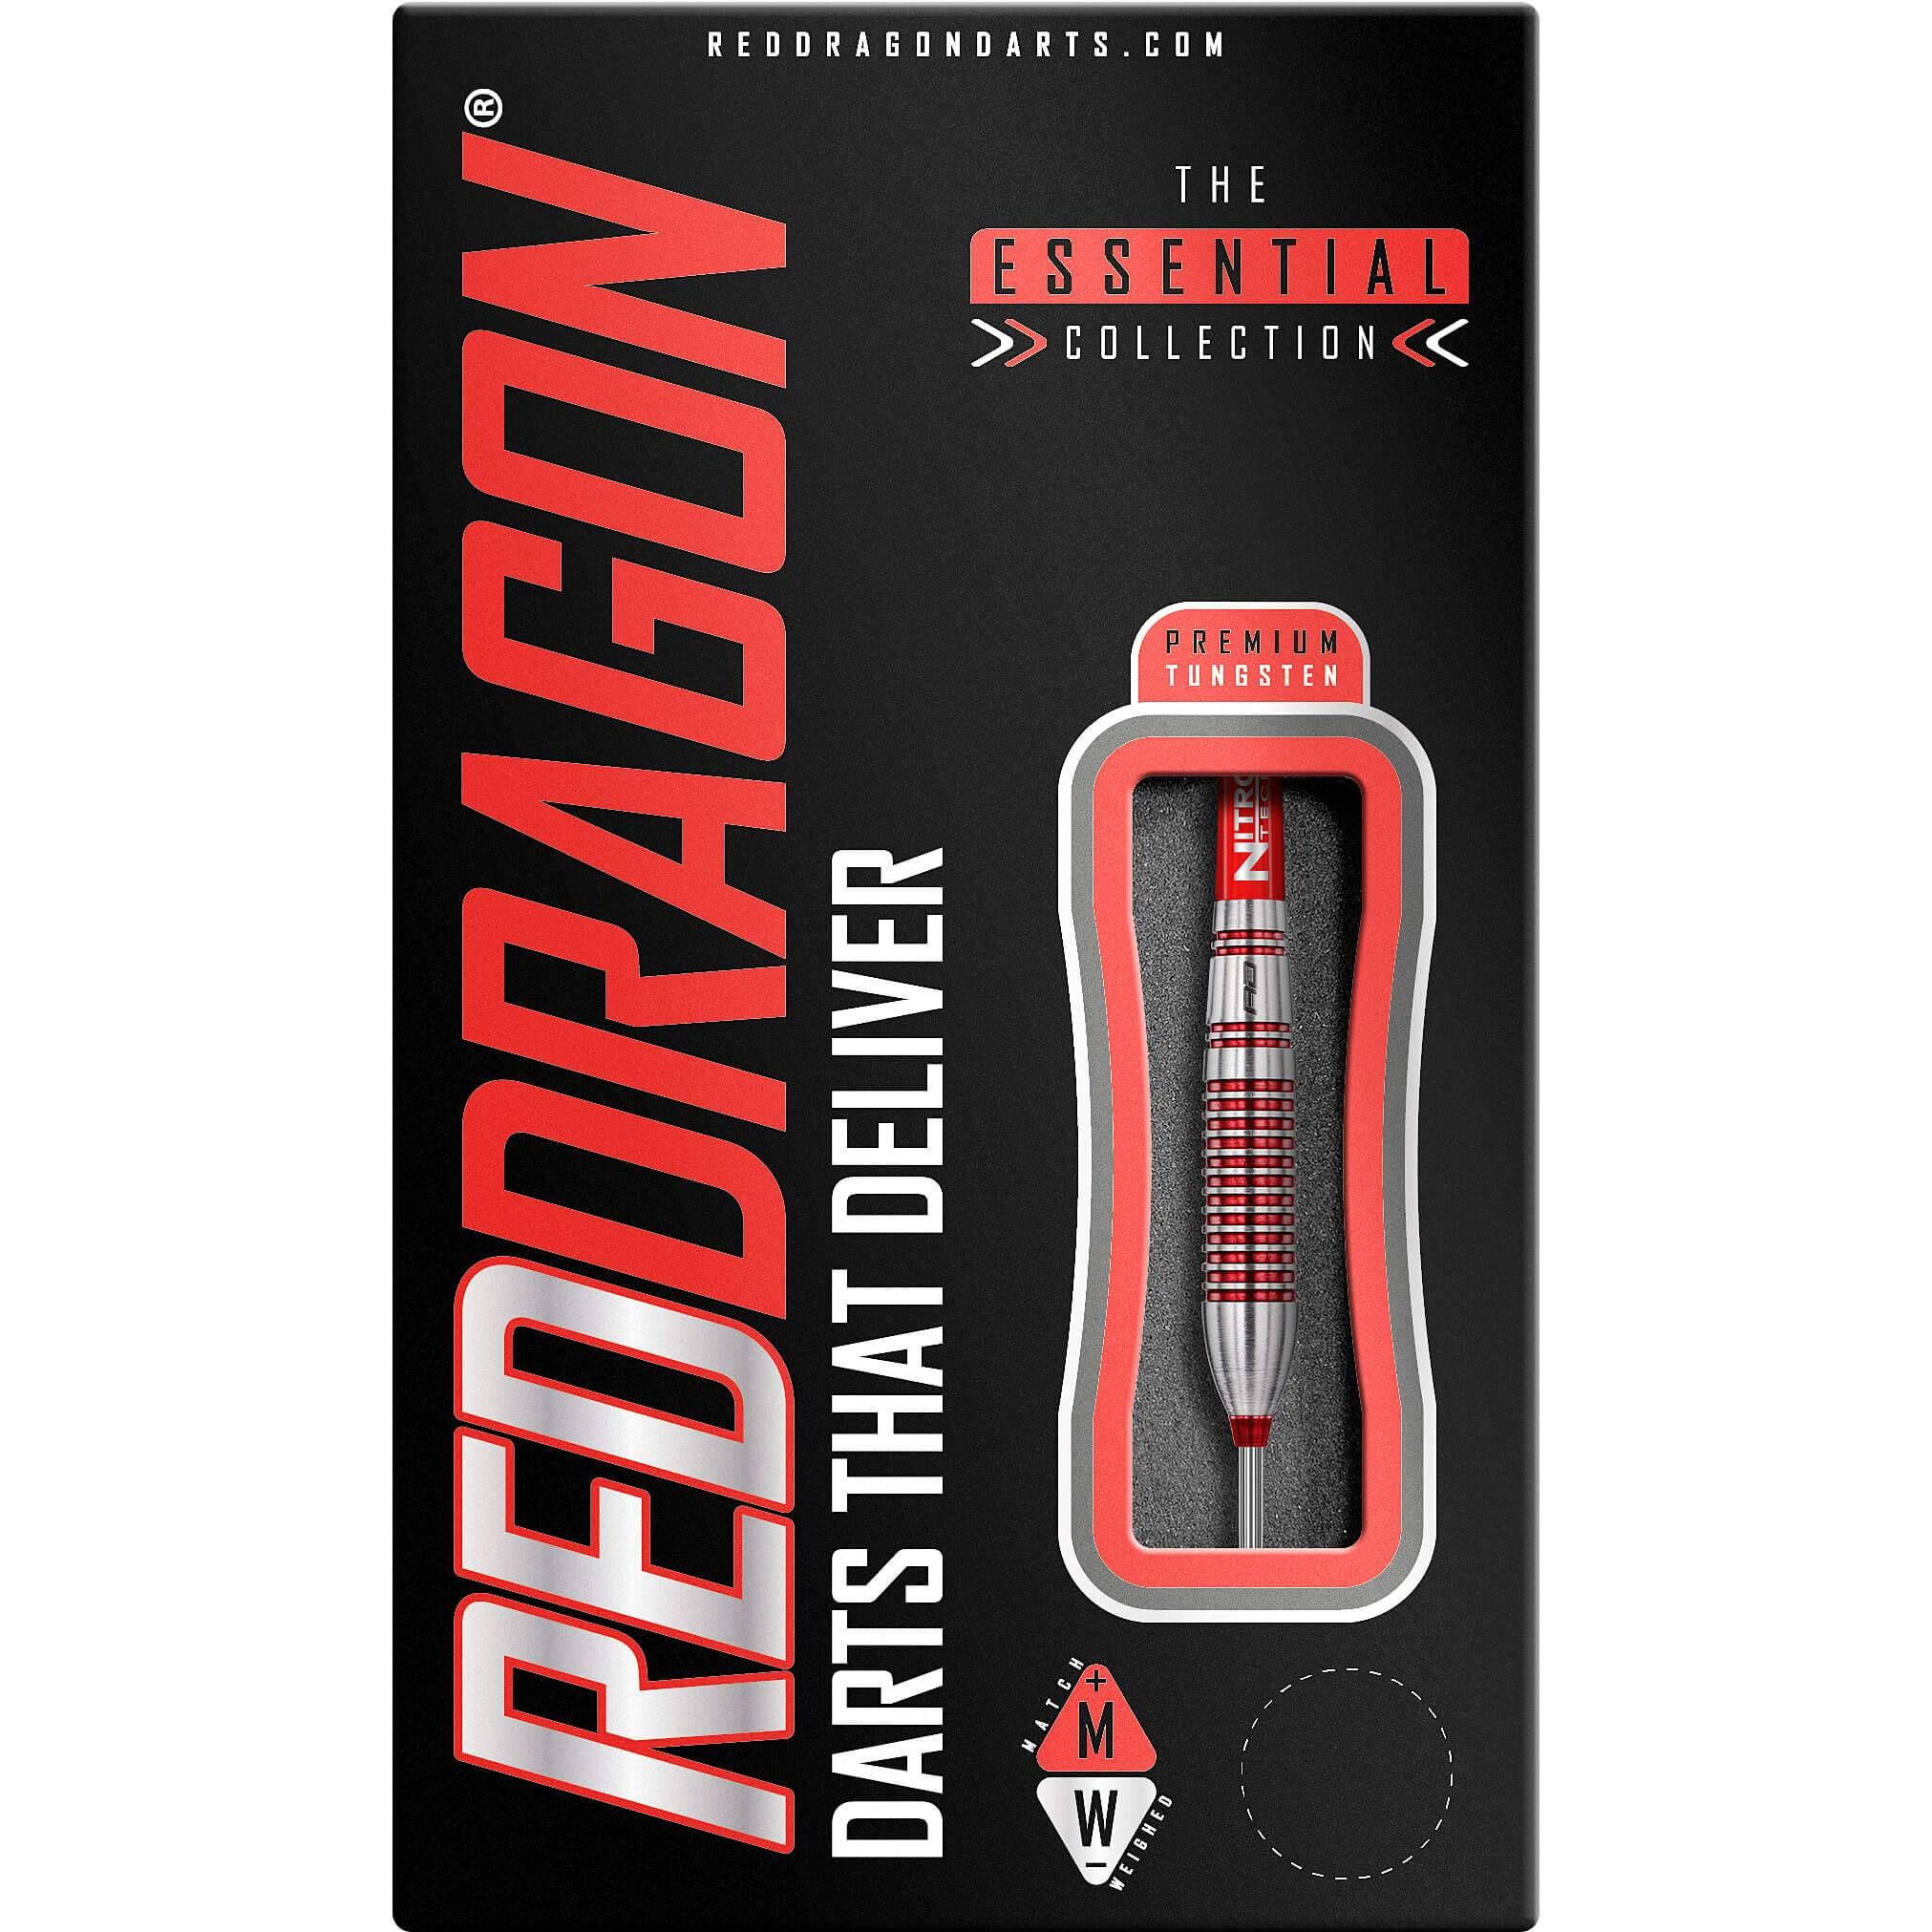 Red Dragon - Reflex - Steeldart